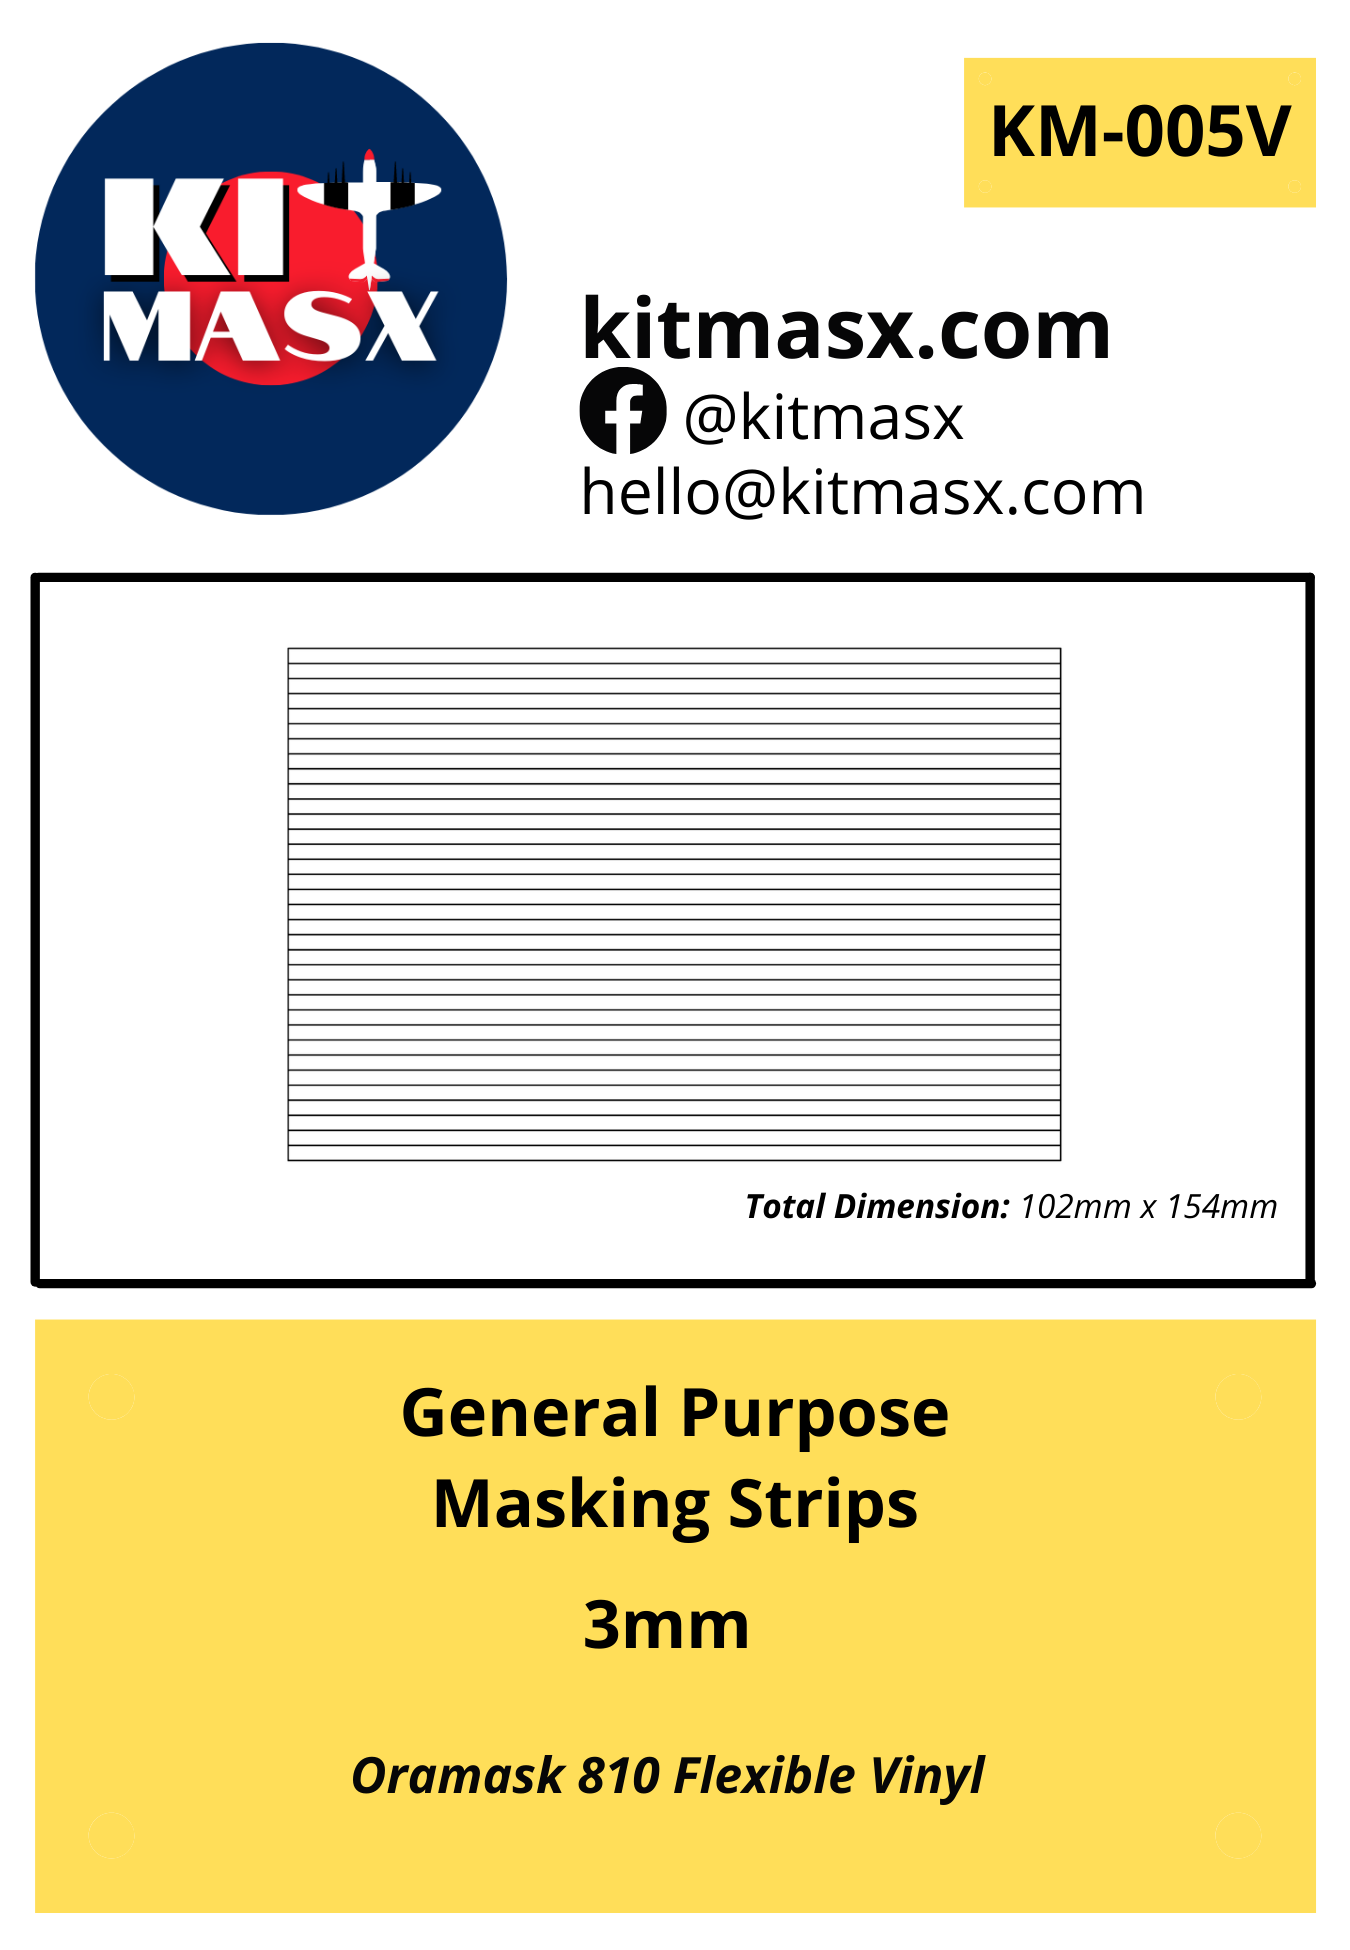 General Purpose Masking Strips 3mm Painting Masks